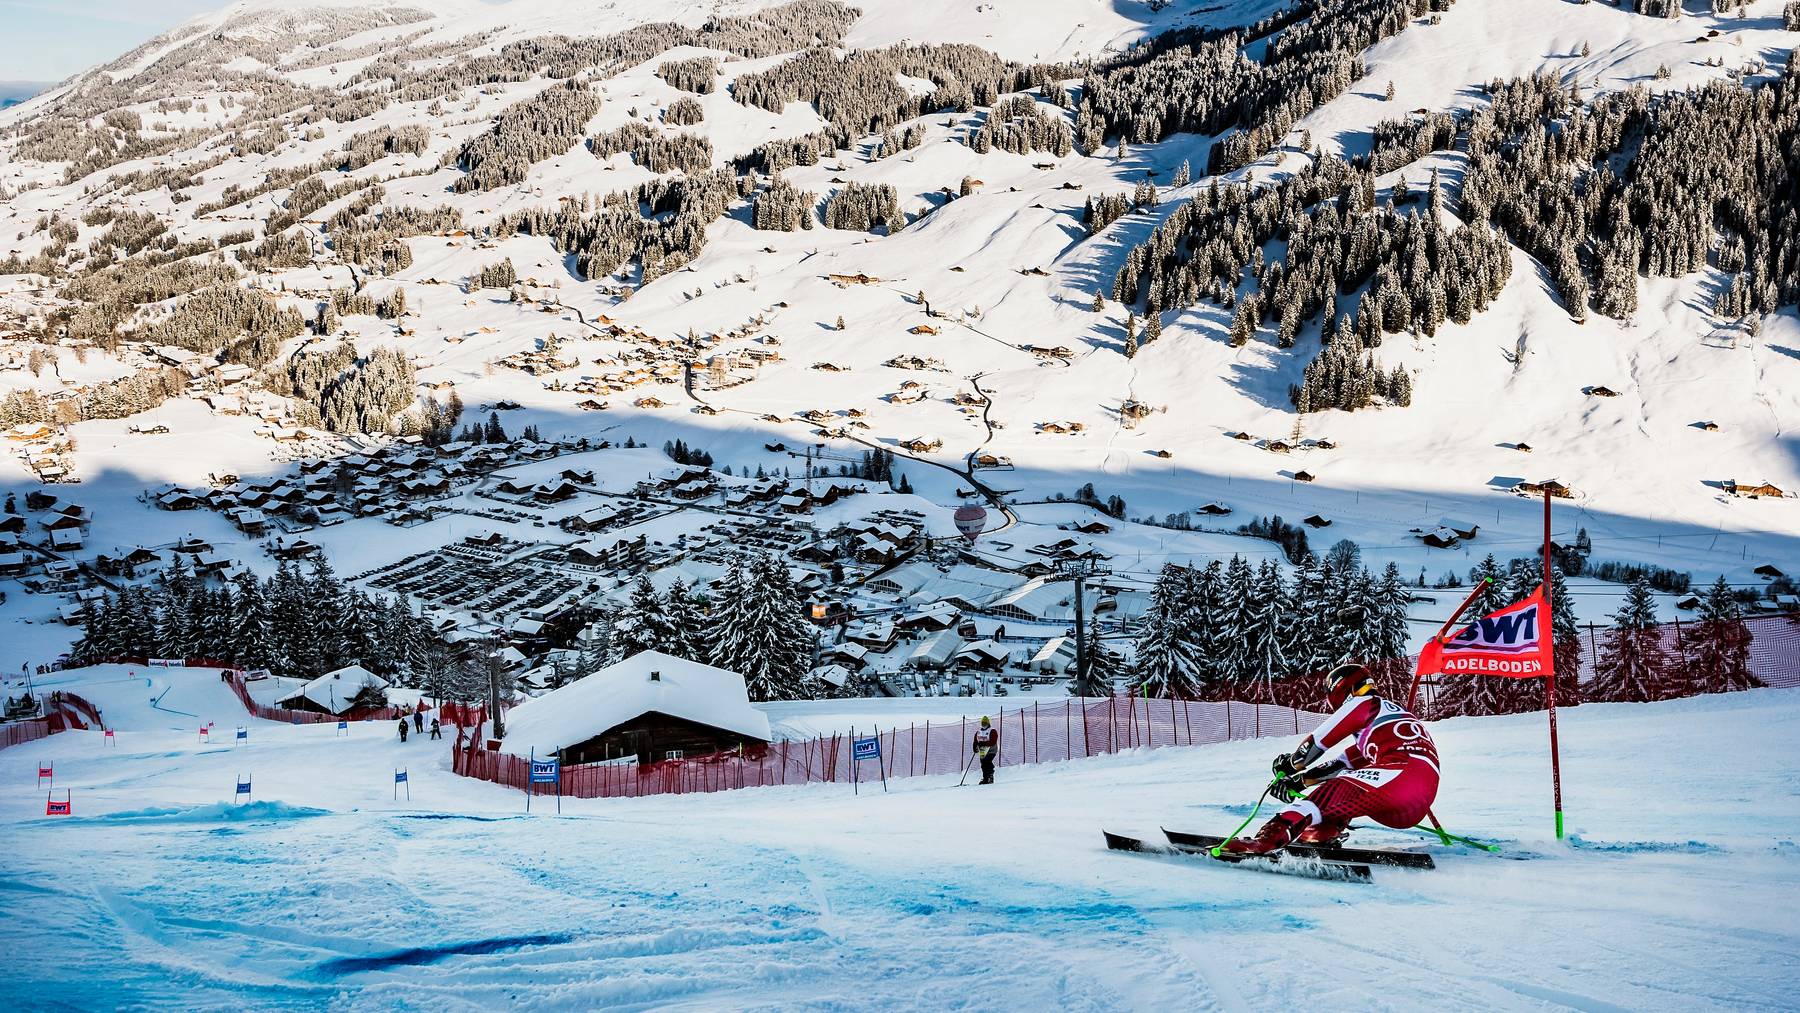 Erhalten definitiv mehr Geld von der Gemeinden: Die jährlichen Skirennen am Chuenisbärgli in Adelboden.